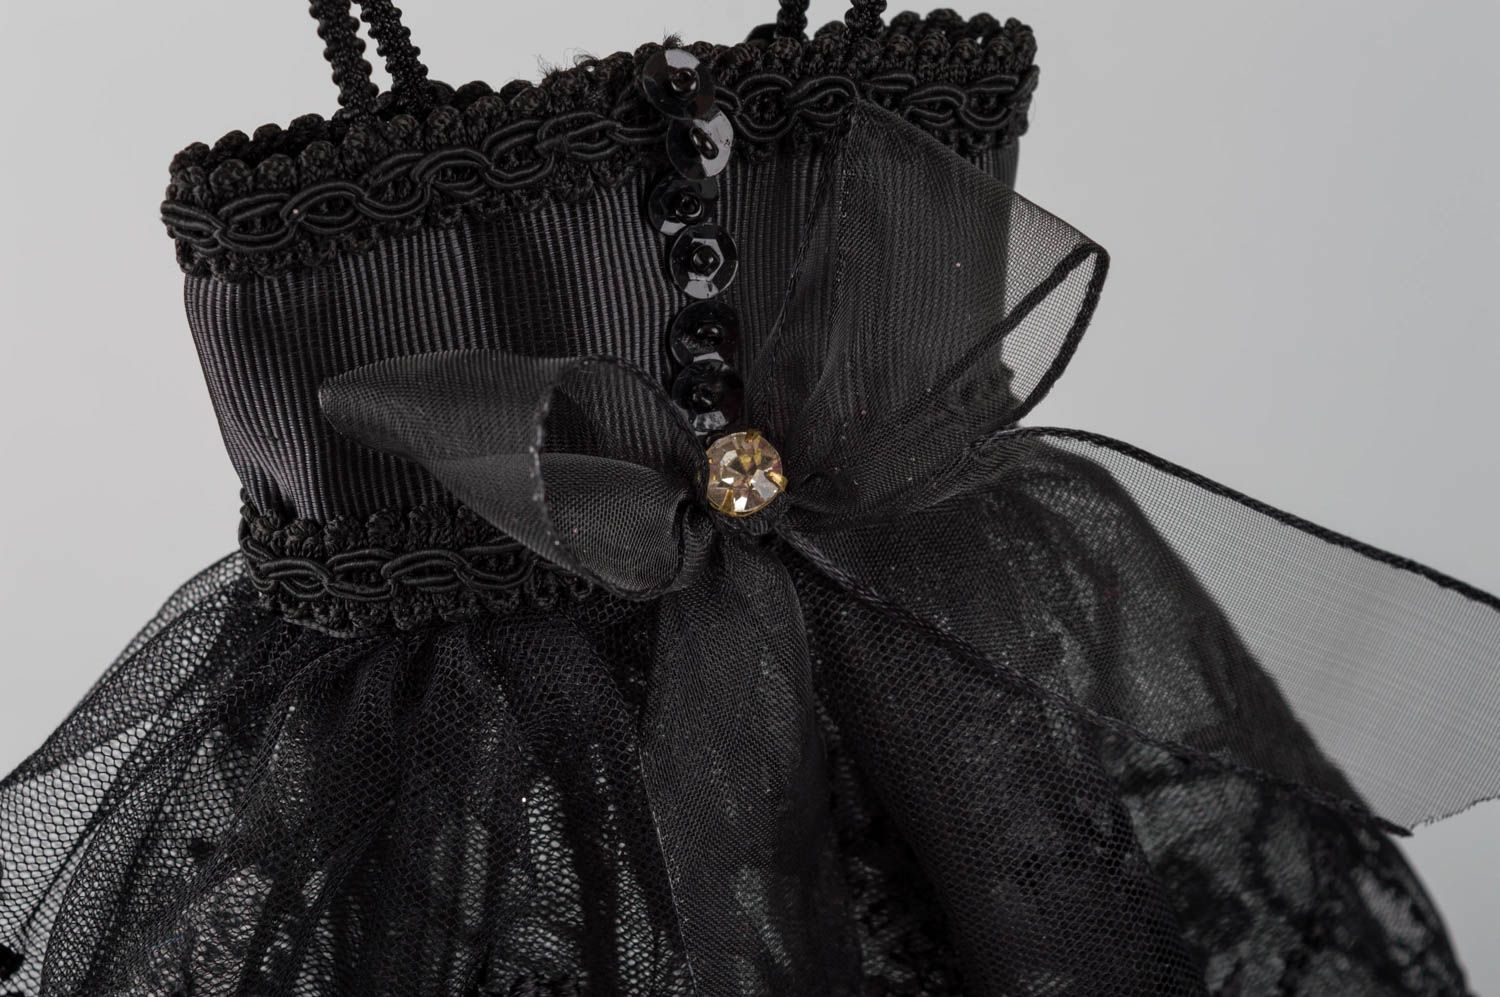 Интерьерная подвеска в виде платья ручной работы оригинальная из кружева фото 5